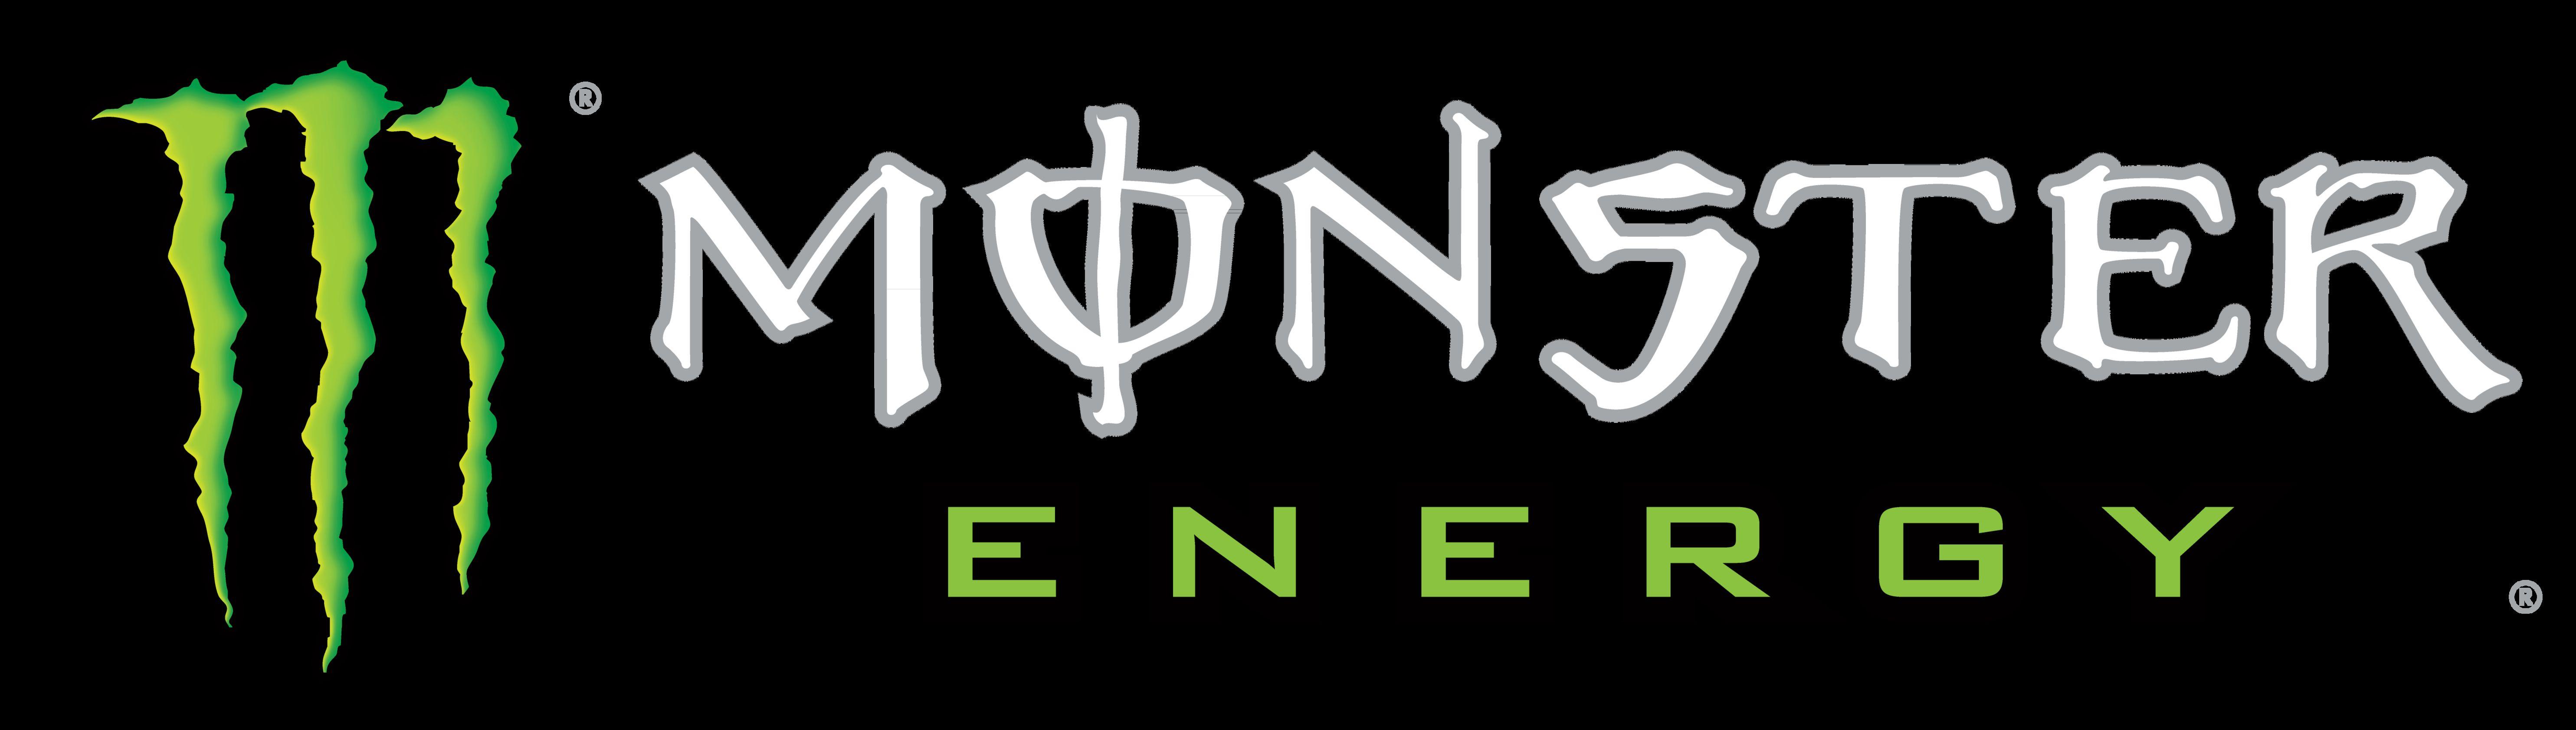 Monster Energy Logo - Monster Energy – Logos Download